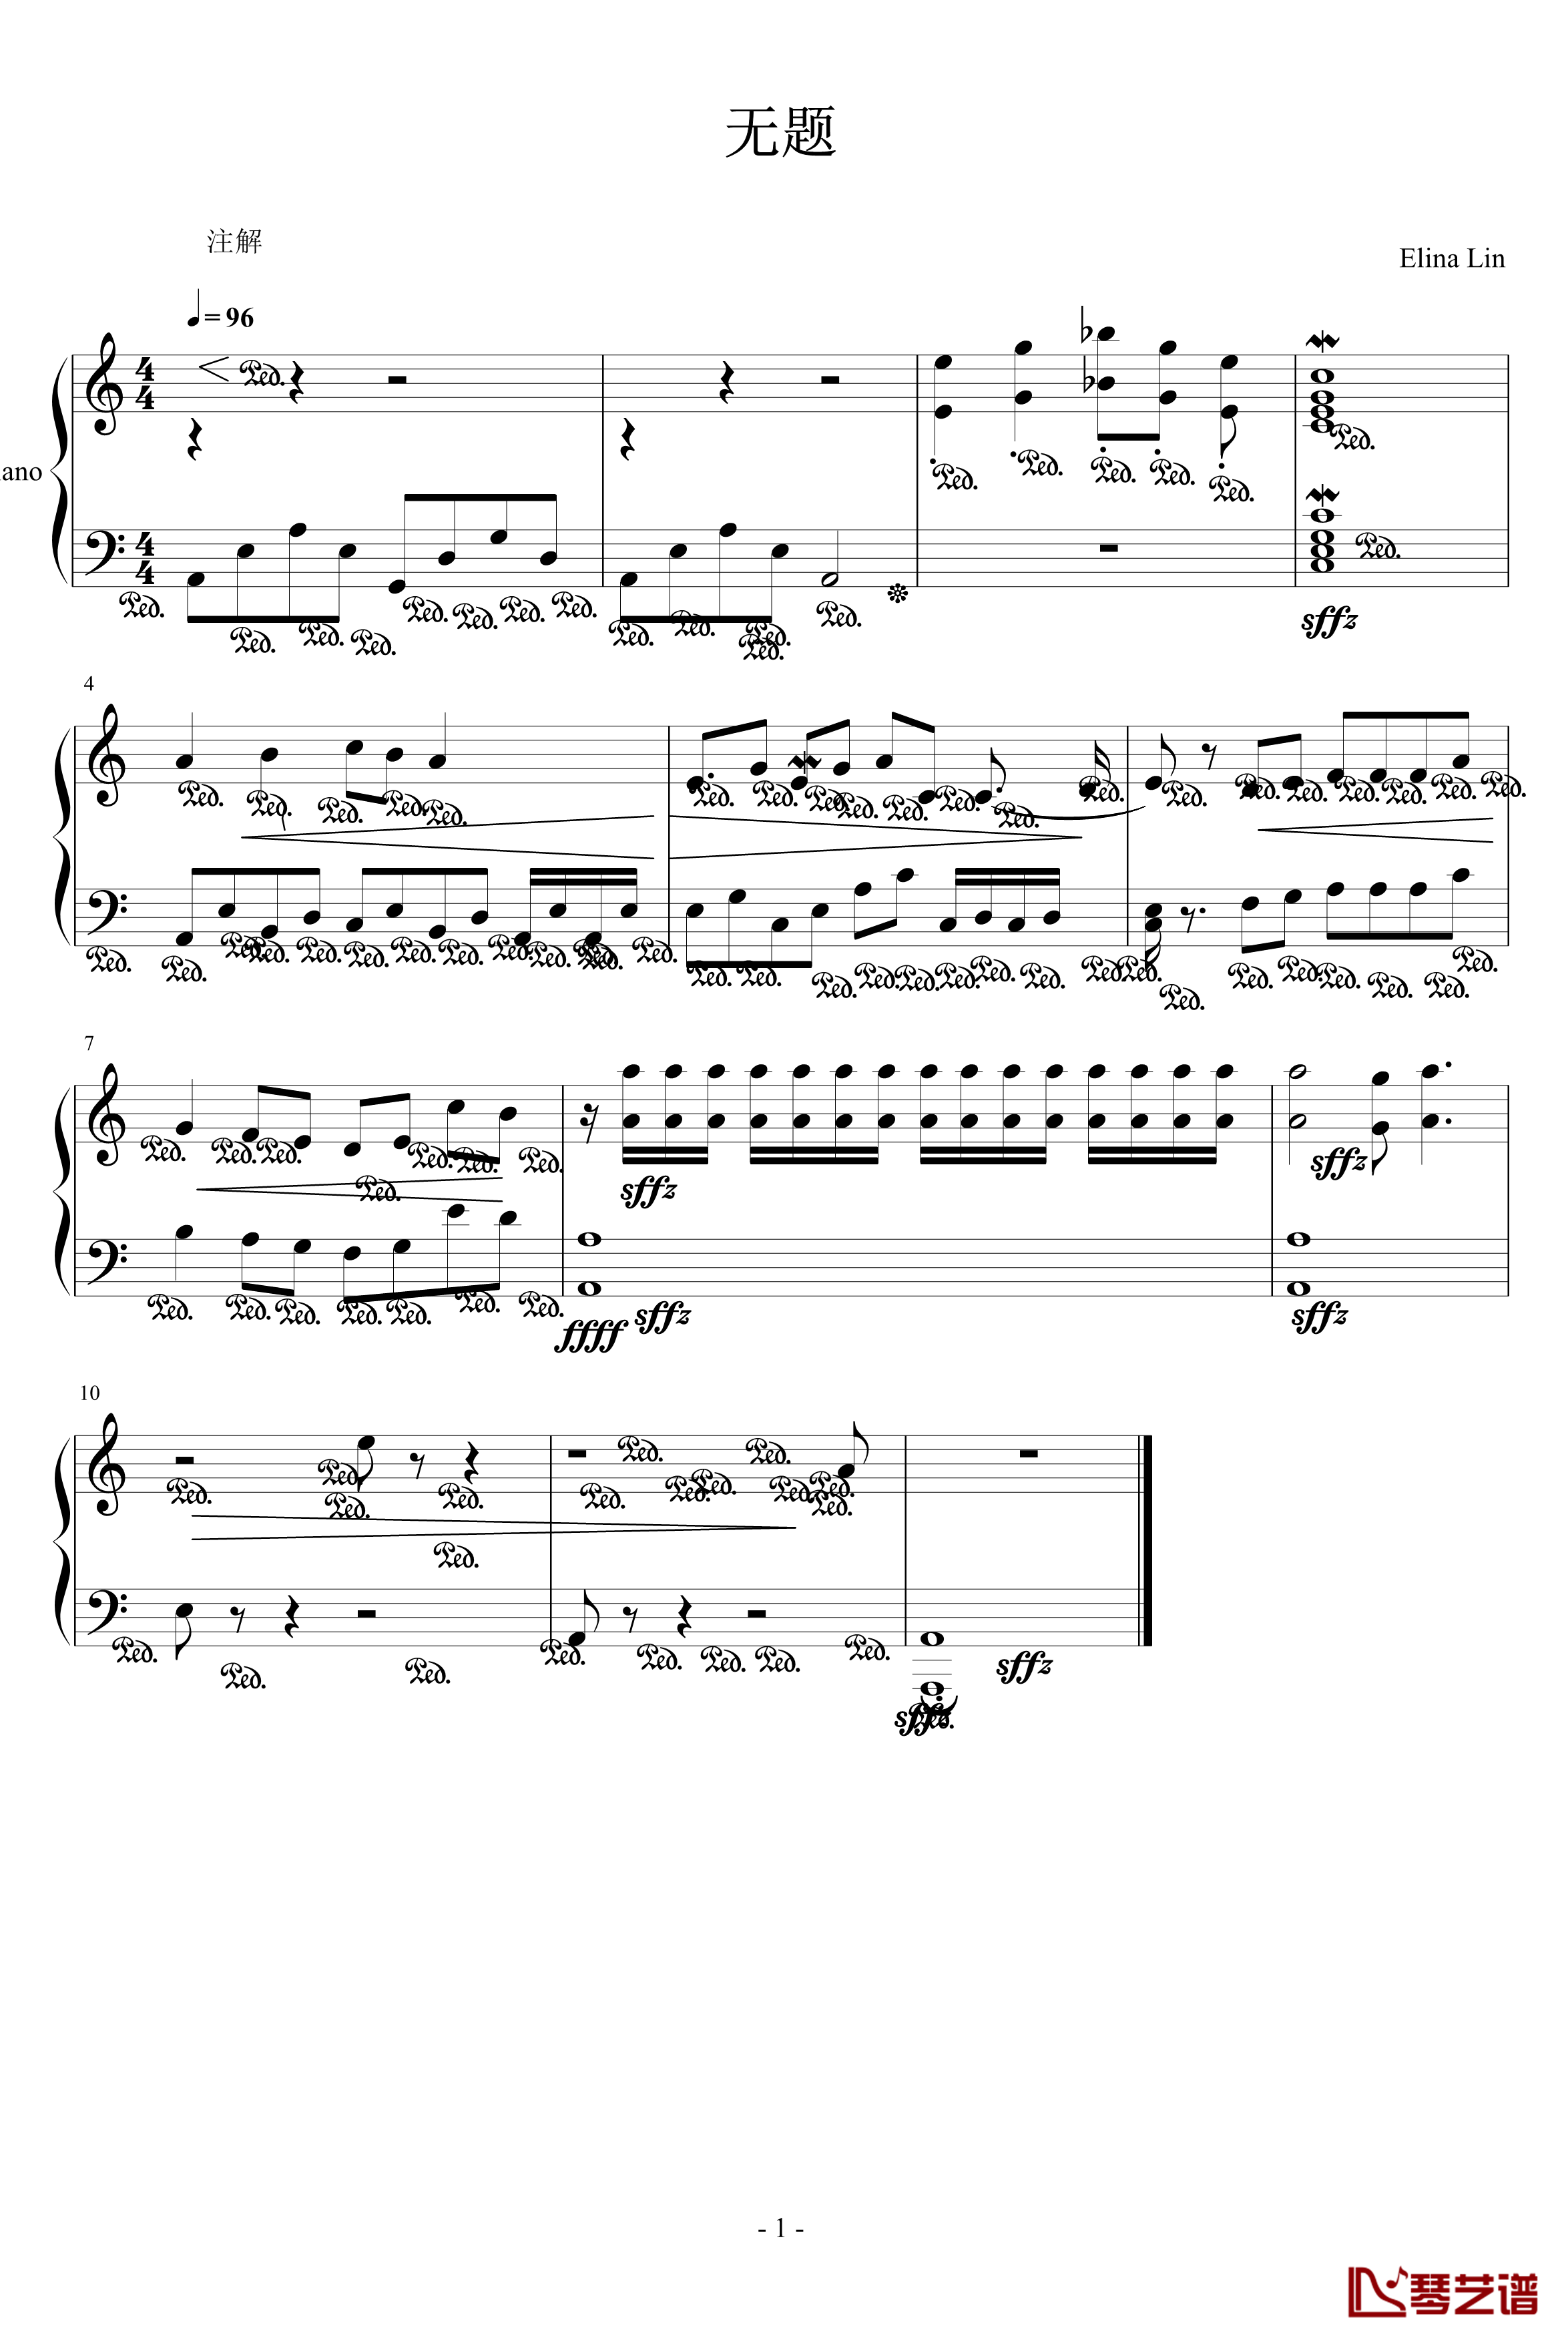 无题钢琴谱-七海林1